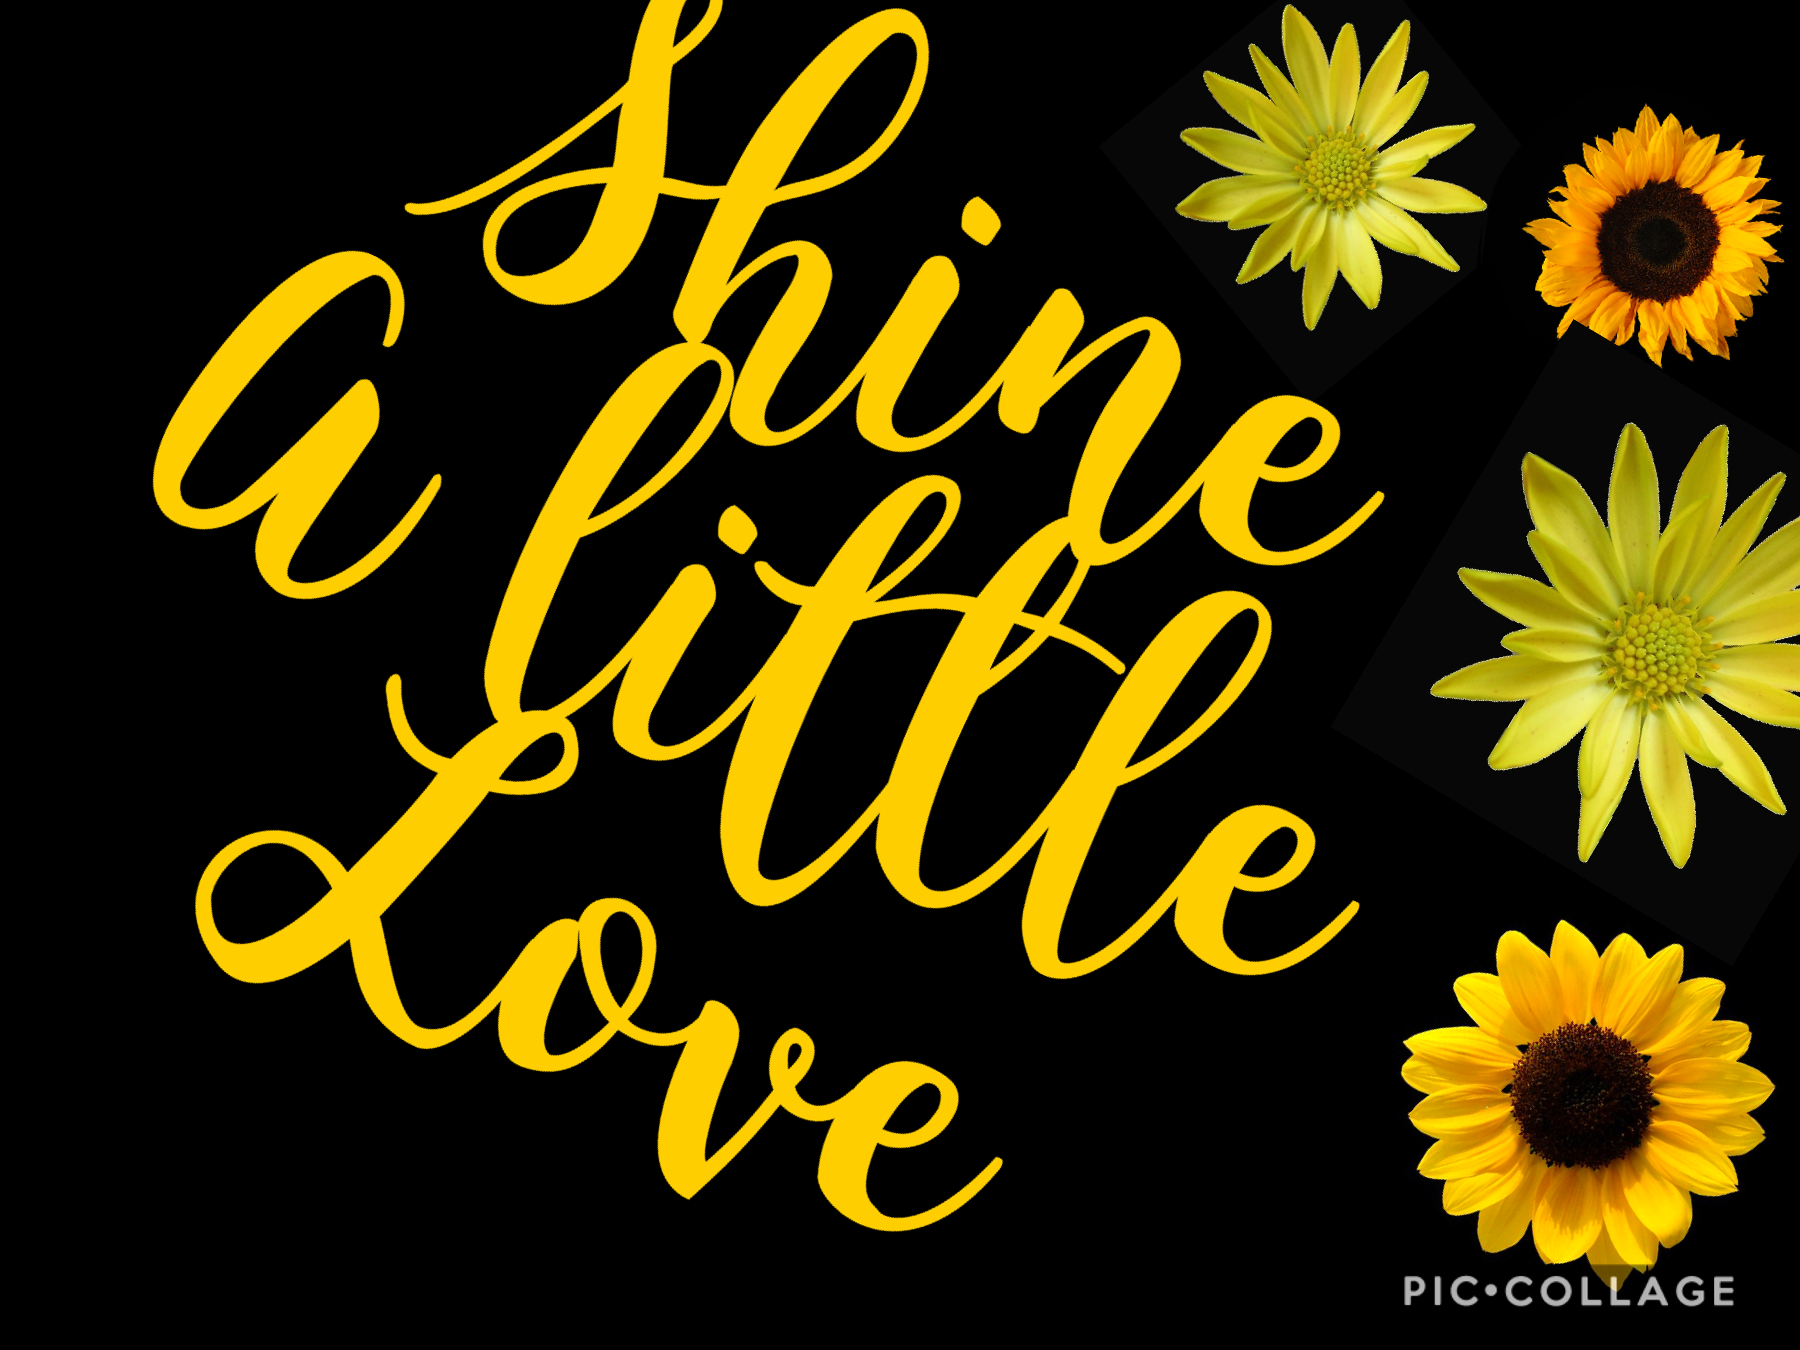 Shine a little love